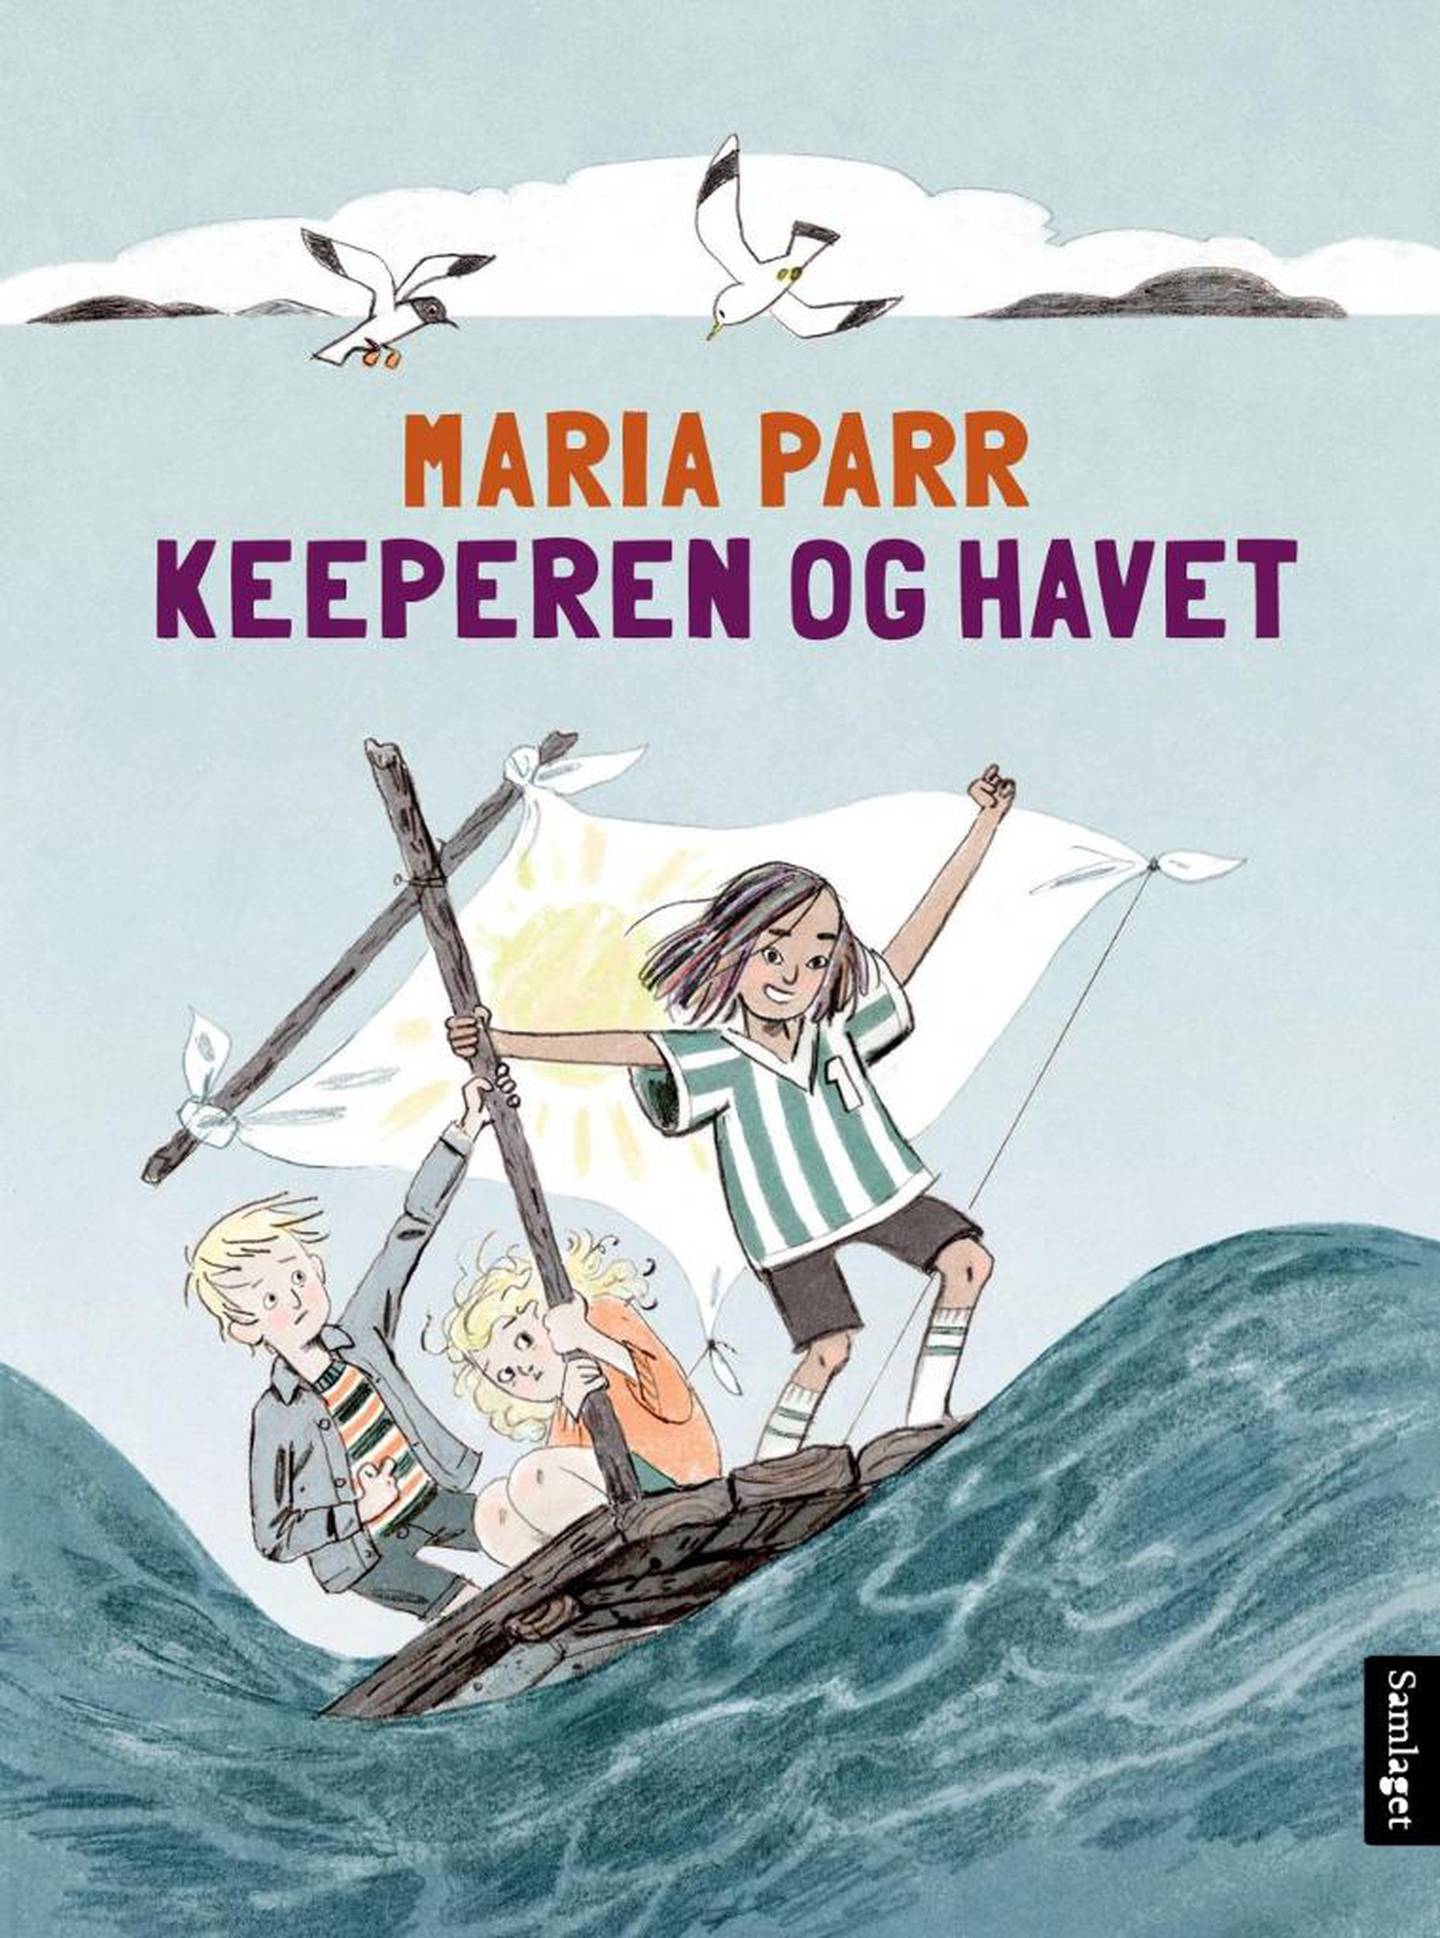 Keeperen og havet, Maria Parr.